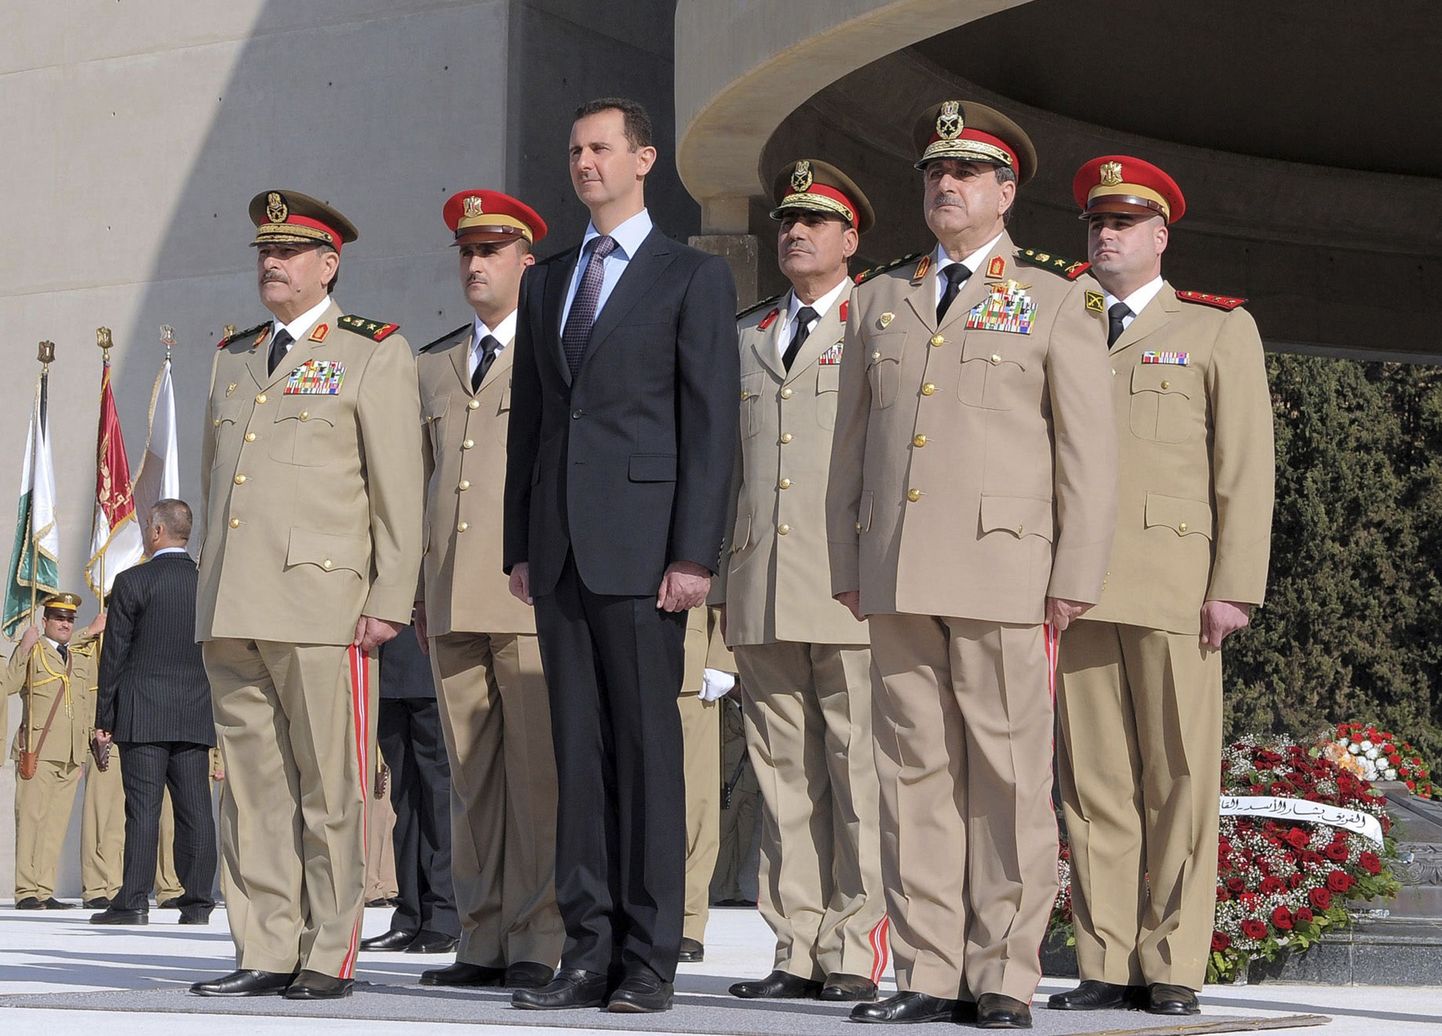 Süüria president Bashar al-Assad (keskel) 2011. aasta fotol koos täna hukkunud kaitseministri Daoud Rajha (esireas paremal) ja teiste armeejuhtidega. Rajha surma järel nimetati uueks kaitseministriks kindral Fahad Jassim al-Freij (esireas vasakul).